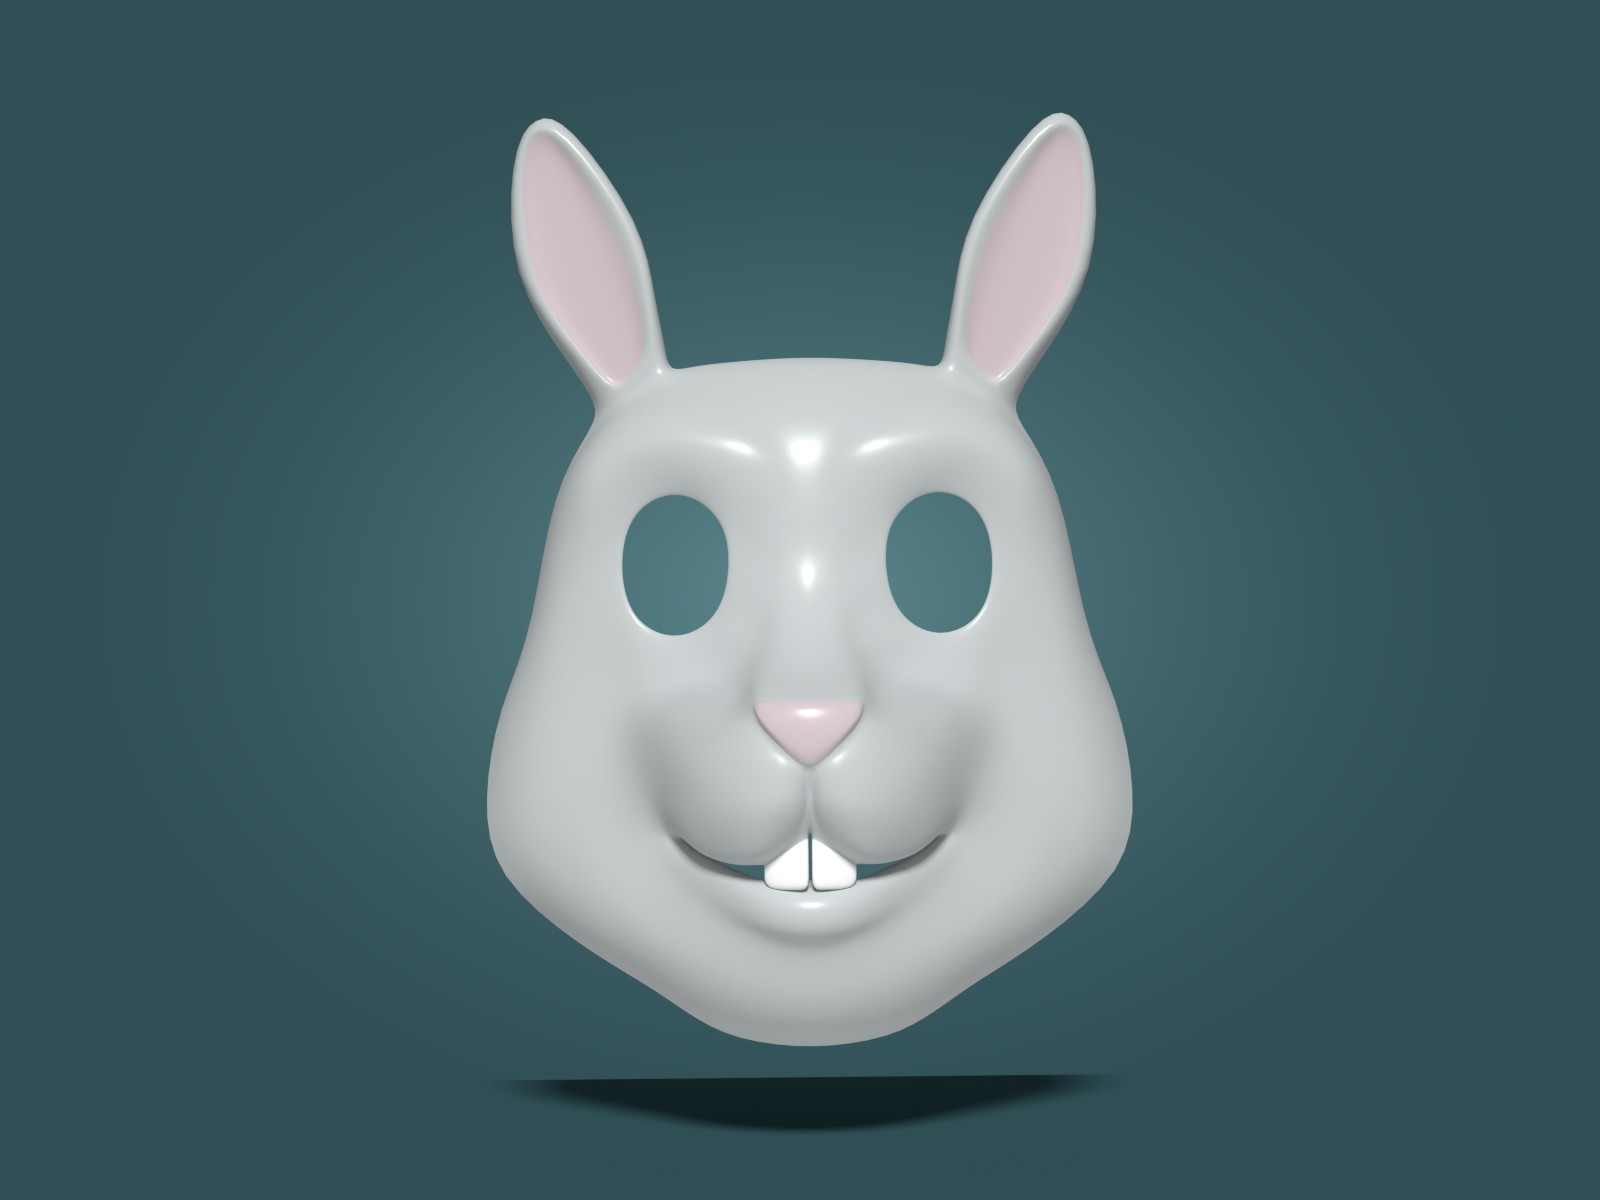 兔子面具图片大全-兔子面具高清图片下载-觅知网